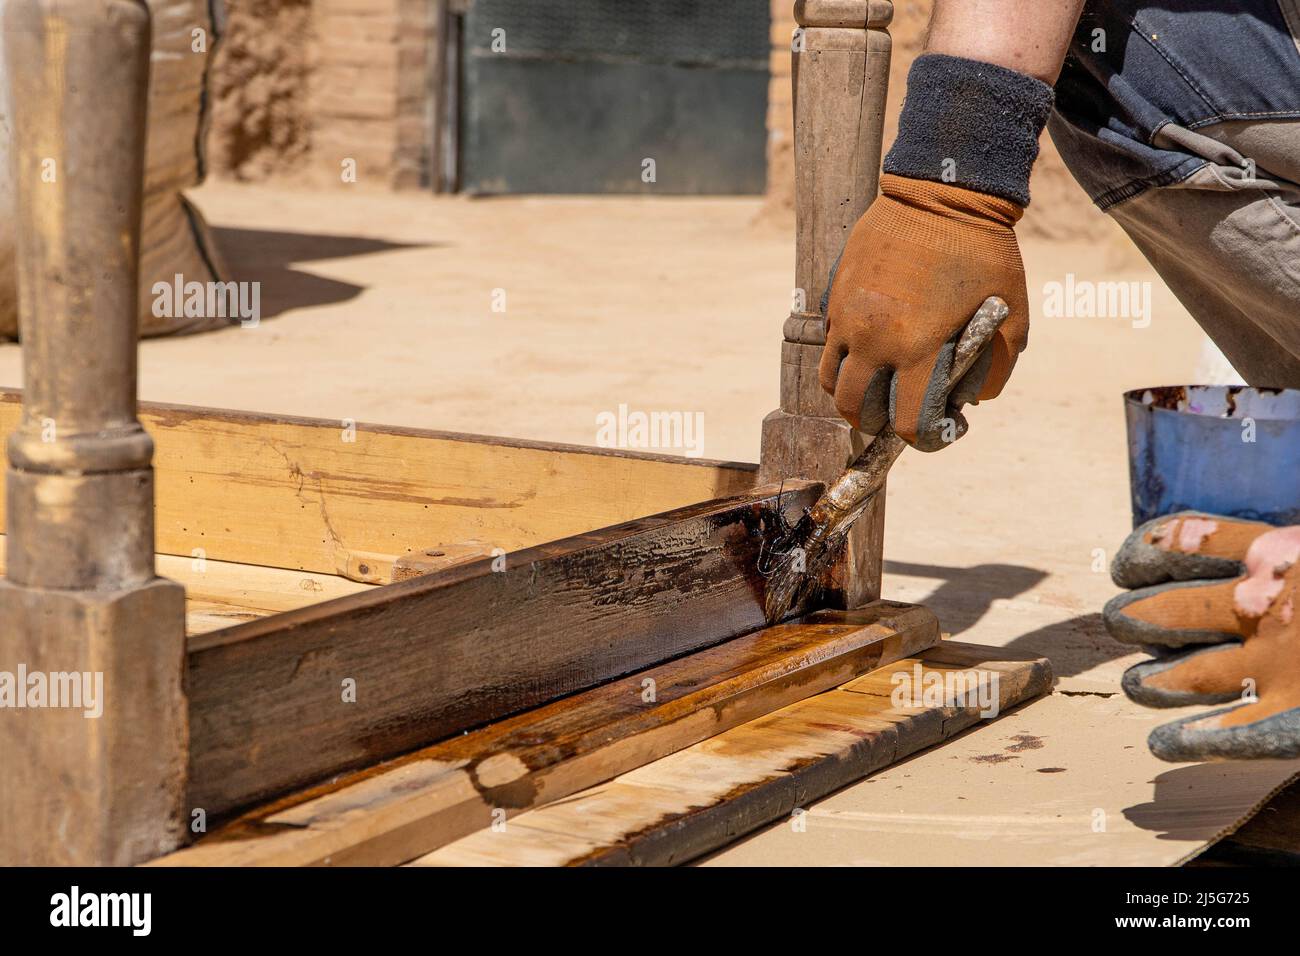 Homme travaillant sur la restauration des anciennes forniture à l'aide de bitume judaicum. Concept de l'entretien du bois et de l'imperméabilisation Banque D'Images